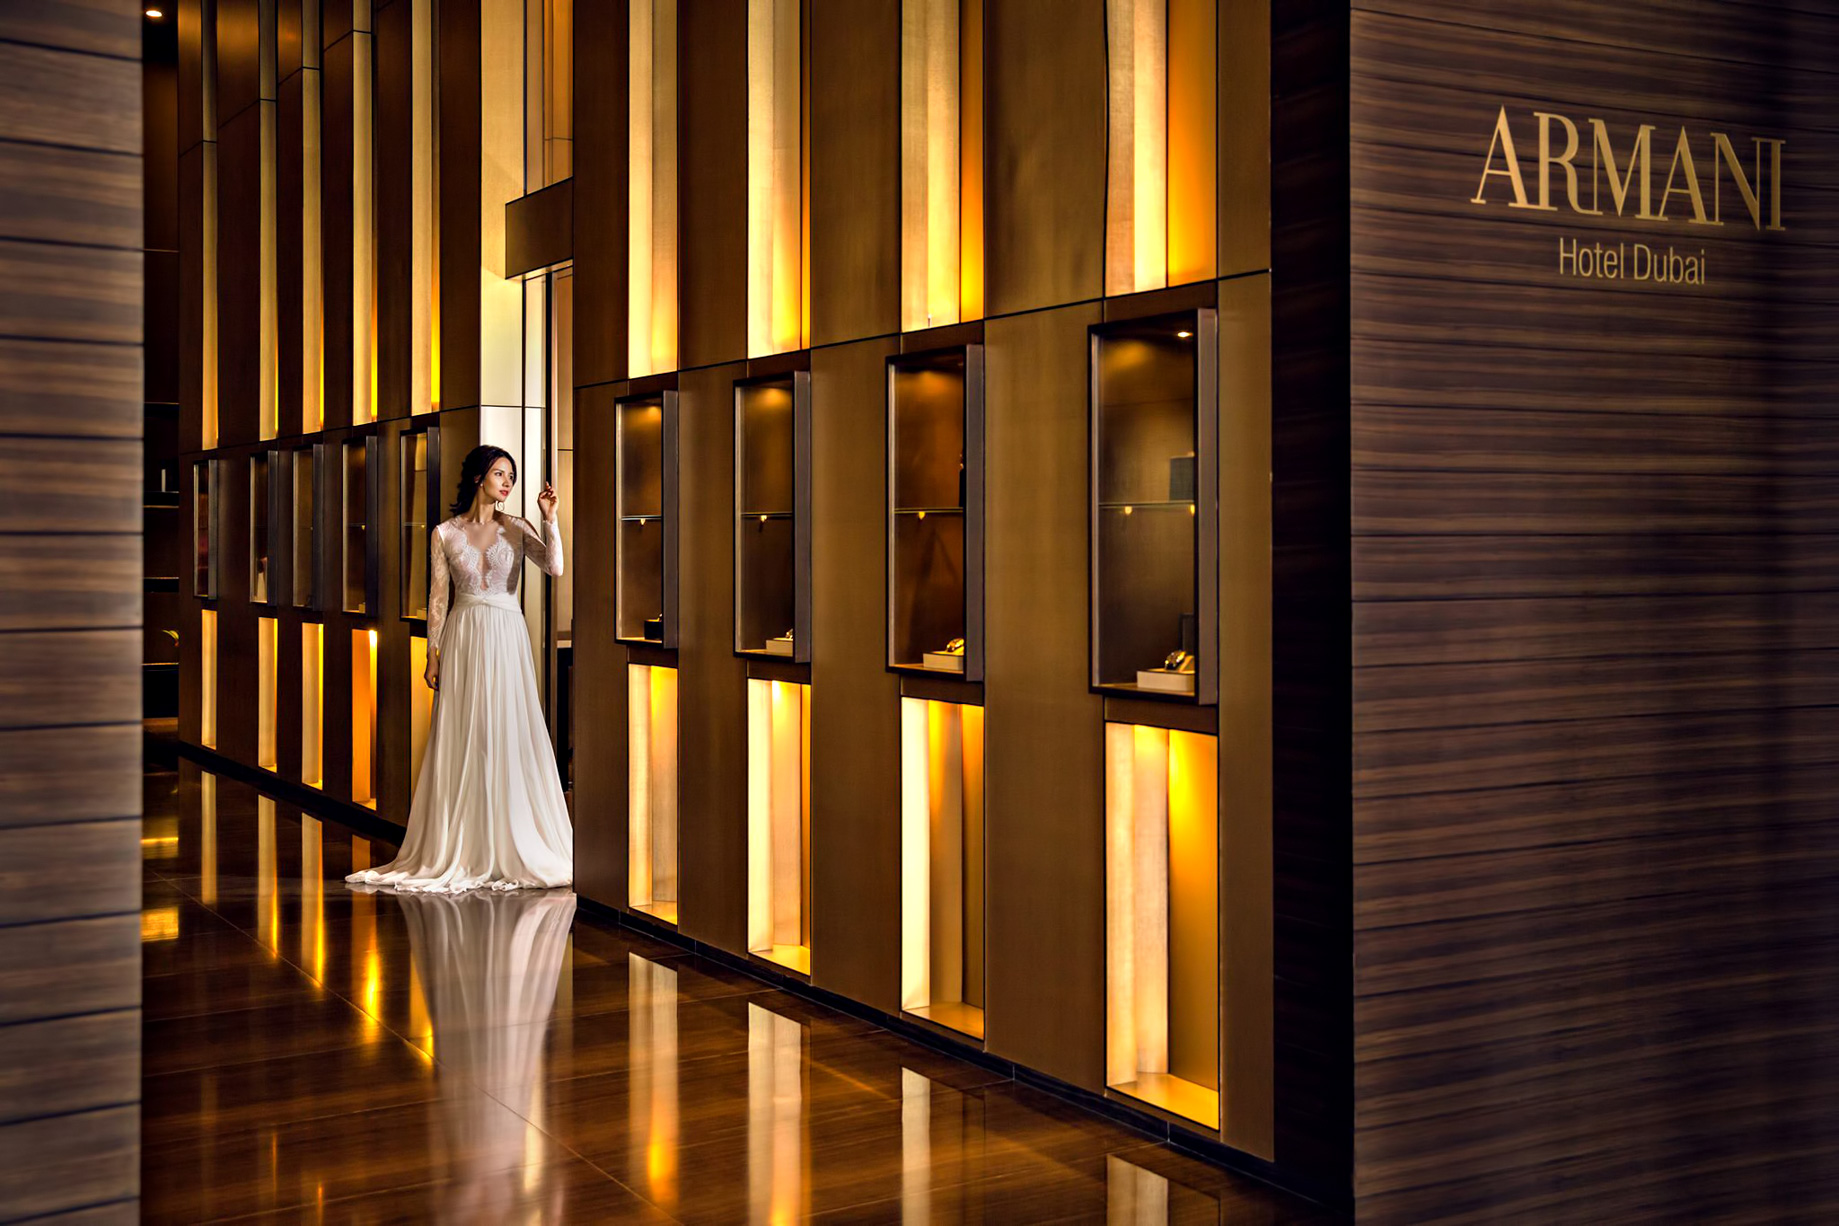 Armani Hotel Dubai - Burj Khalifa, Dubai, UAE - Armani Signature Lifestyle Aesthetic